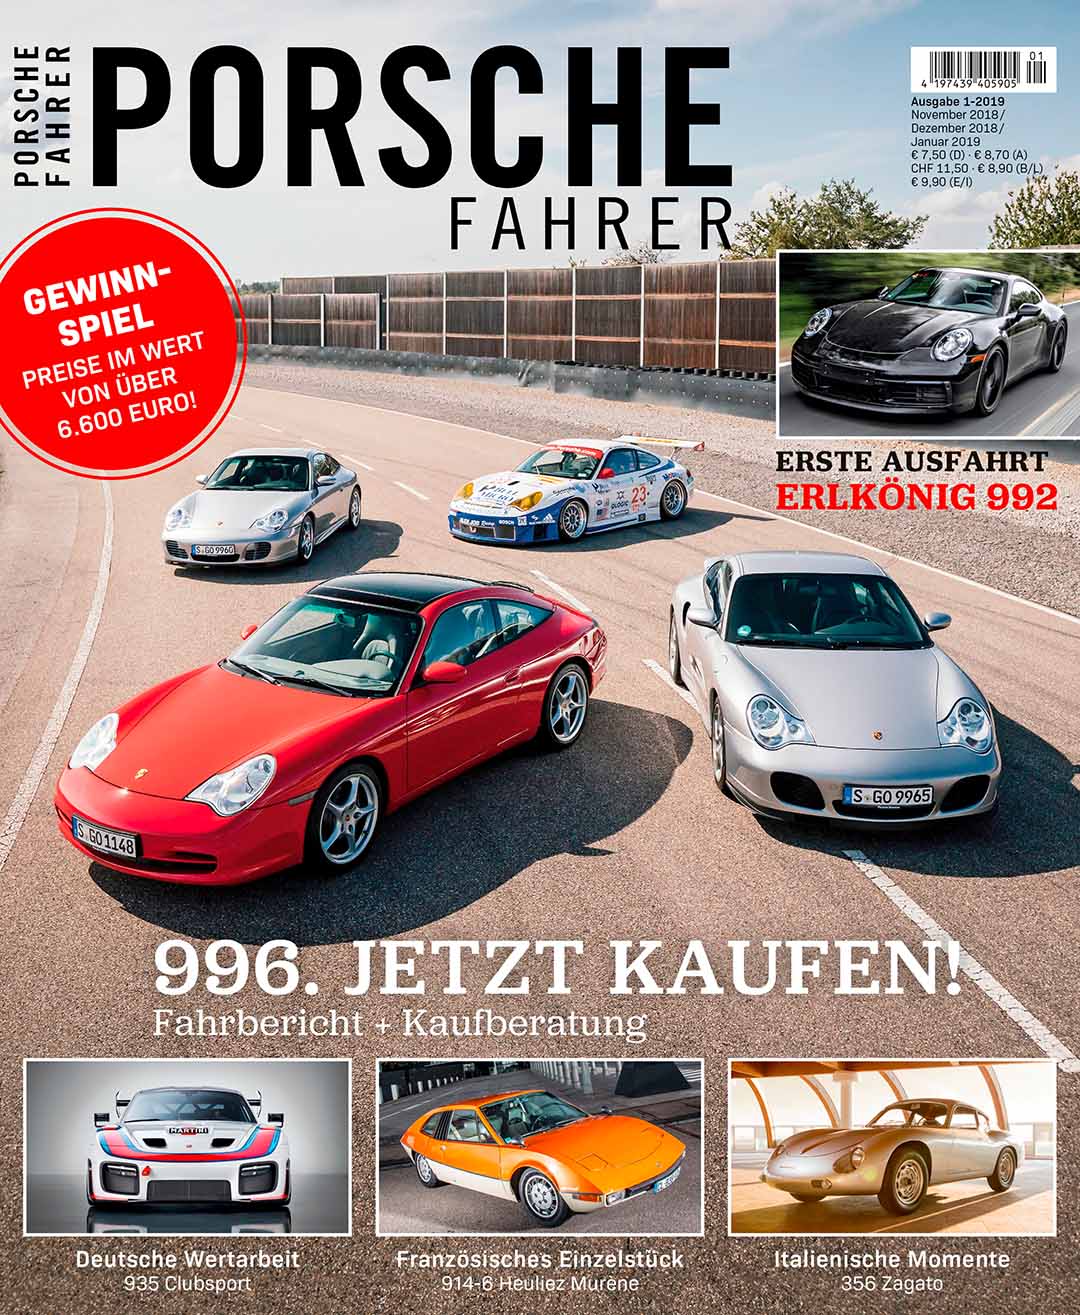 Heftvorschau: Das ist die neue Ausgabe 4/2018 von sport auto